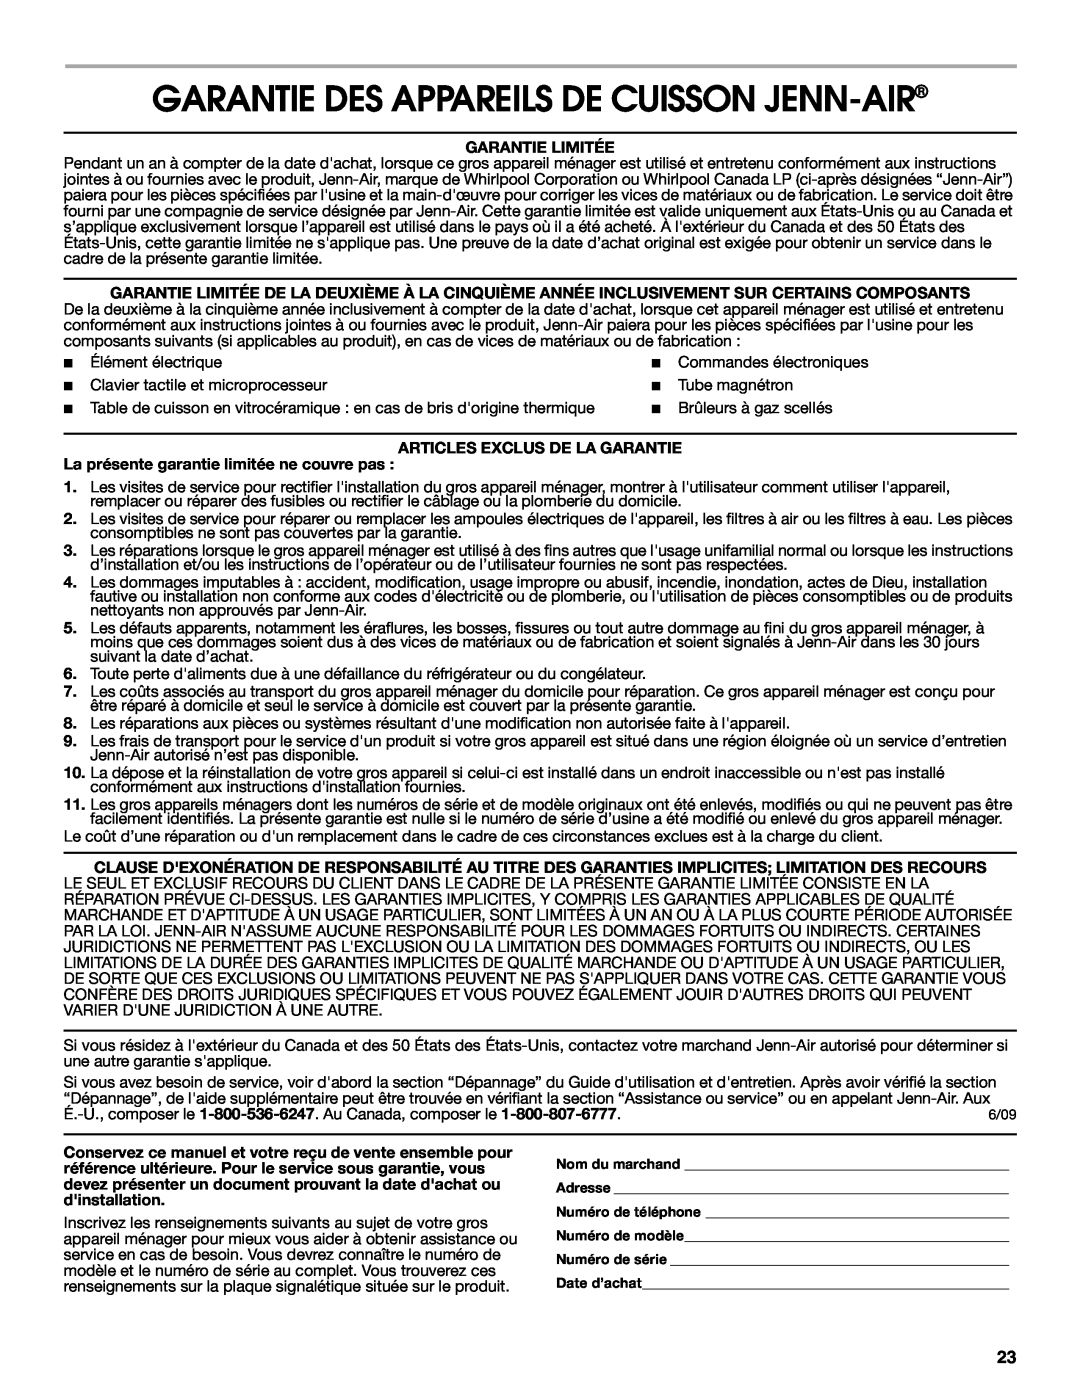 Jenn-Air W10233478B Garantie Des Appareils De Cuisson Jenn-Air, Garantie Limitée, Articles Exclus De La Garantie 